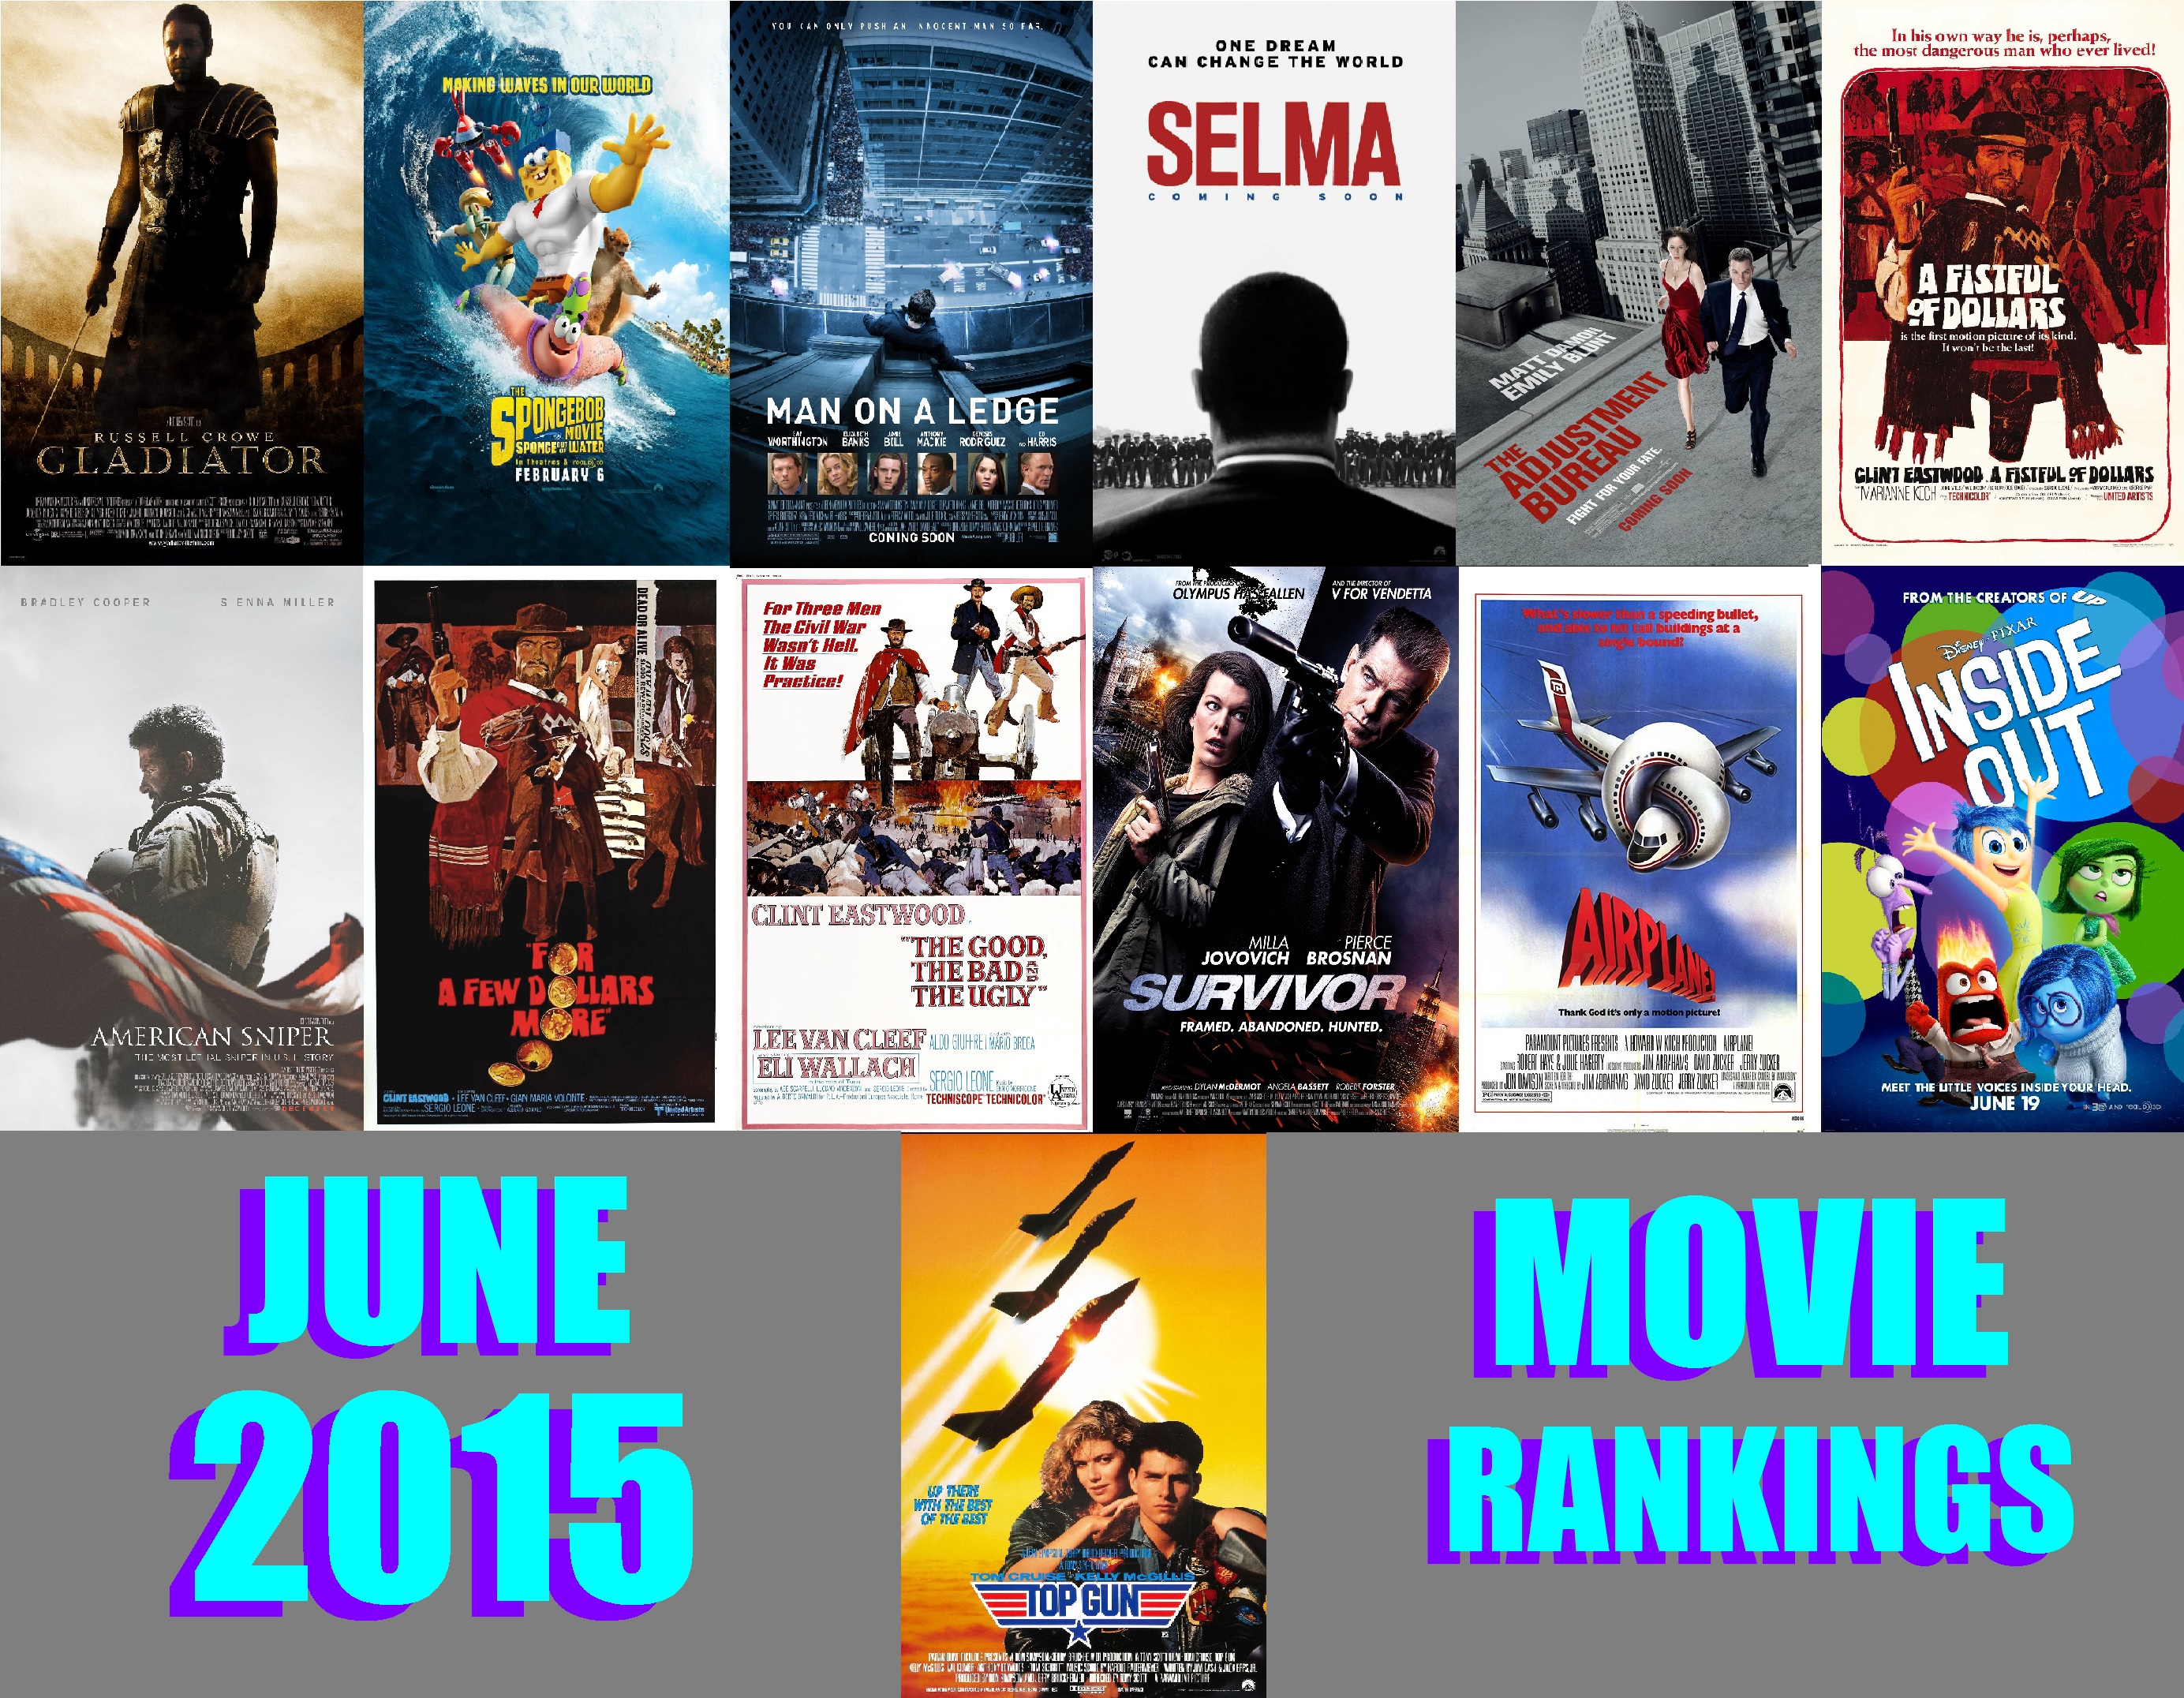 Movie reviews | movie ratings | movies.com